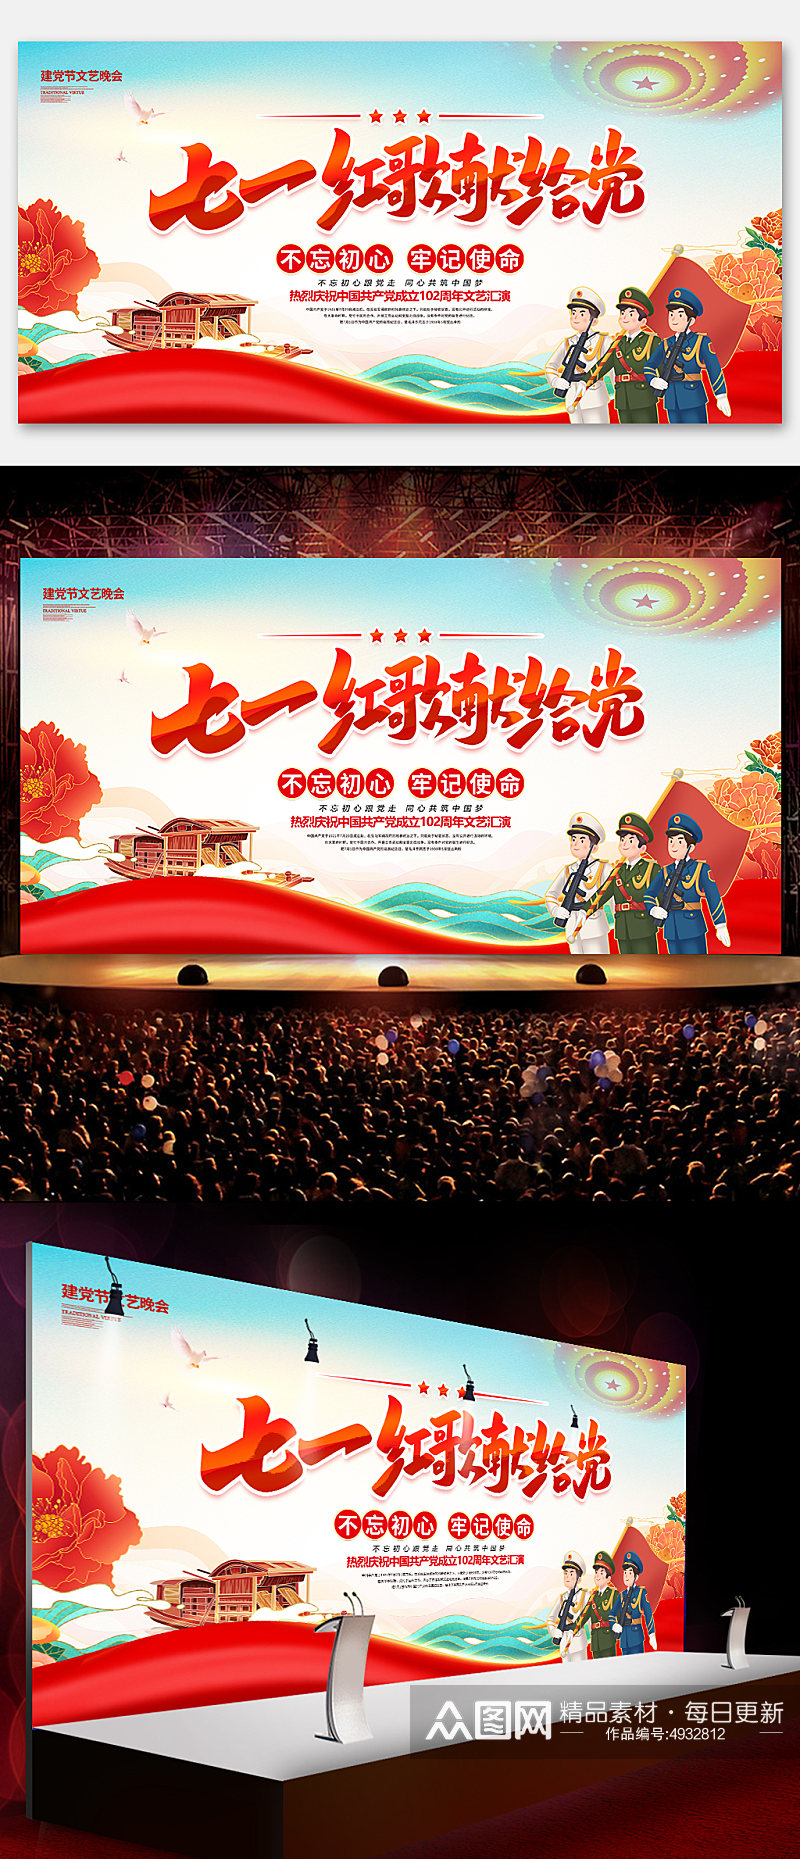 七一建党节102周年晚会红歌会展板海报素材